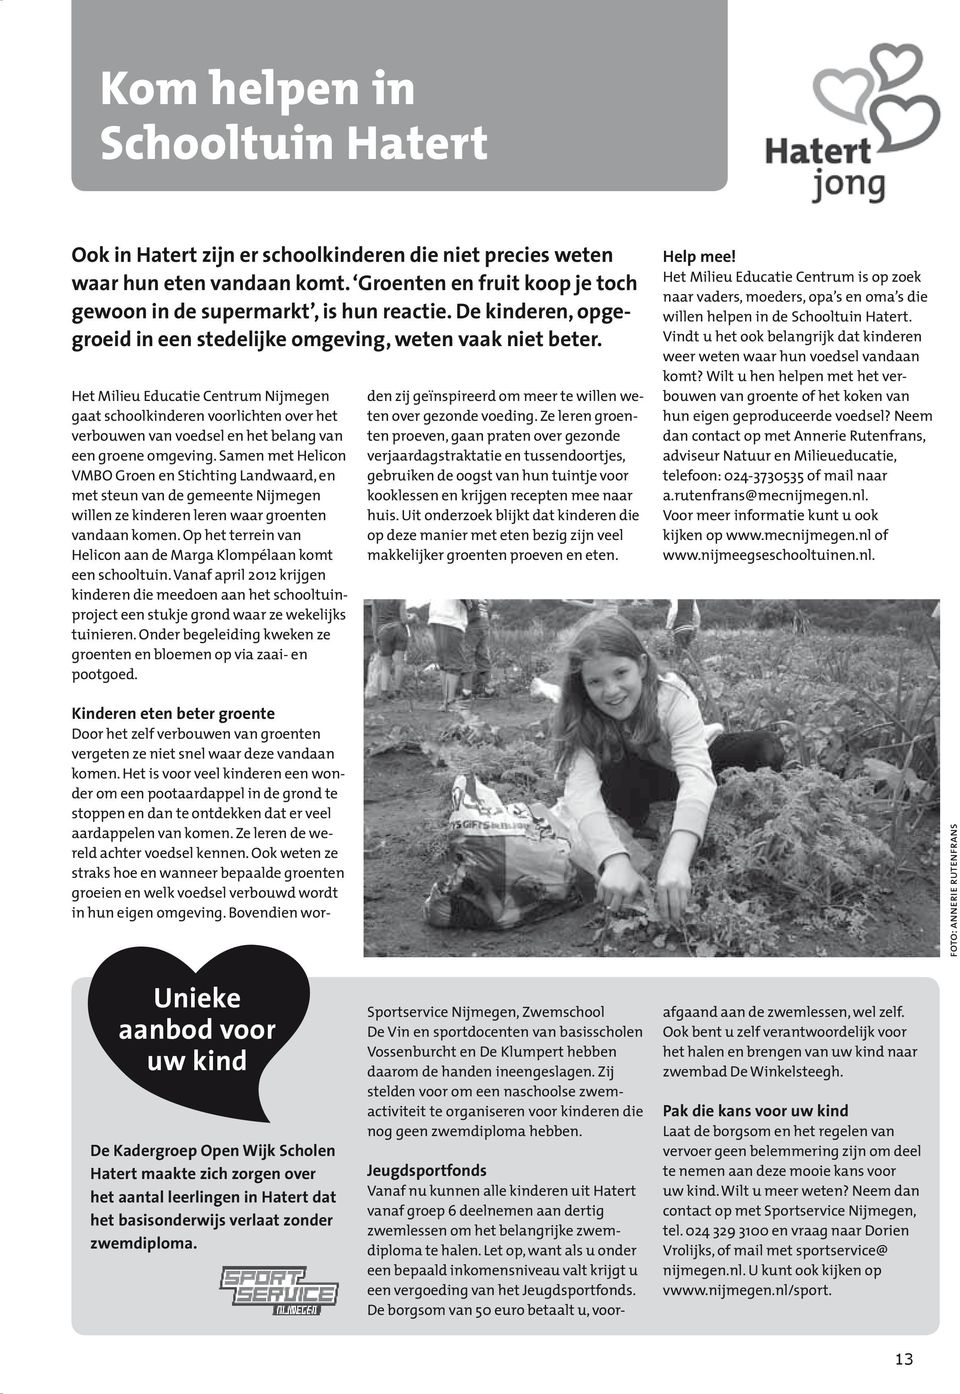 Het Milieu Educatie Centrum Nijmegen gaat schoolkinderen voorlichten over het verbouwen van voedsel en het belang van een groene omgeving.